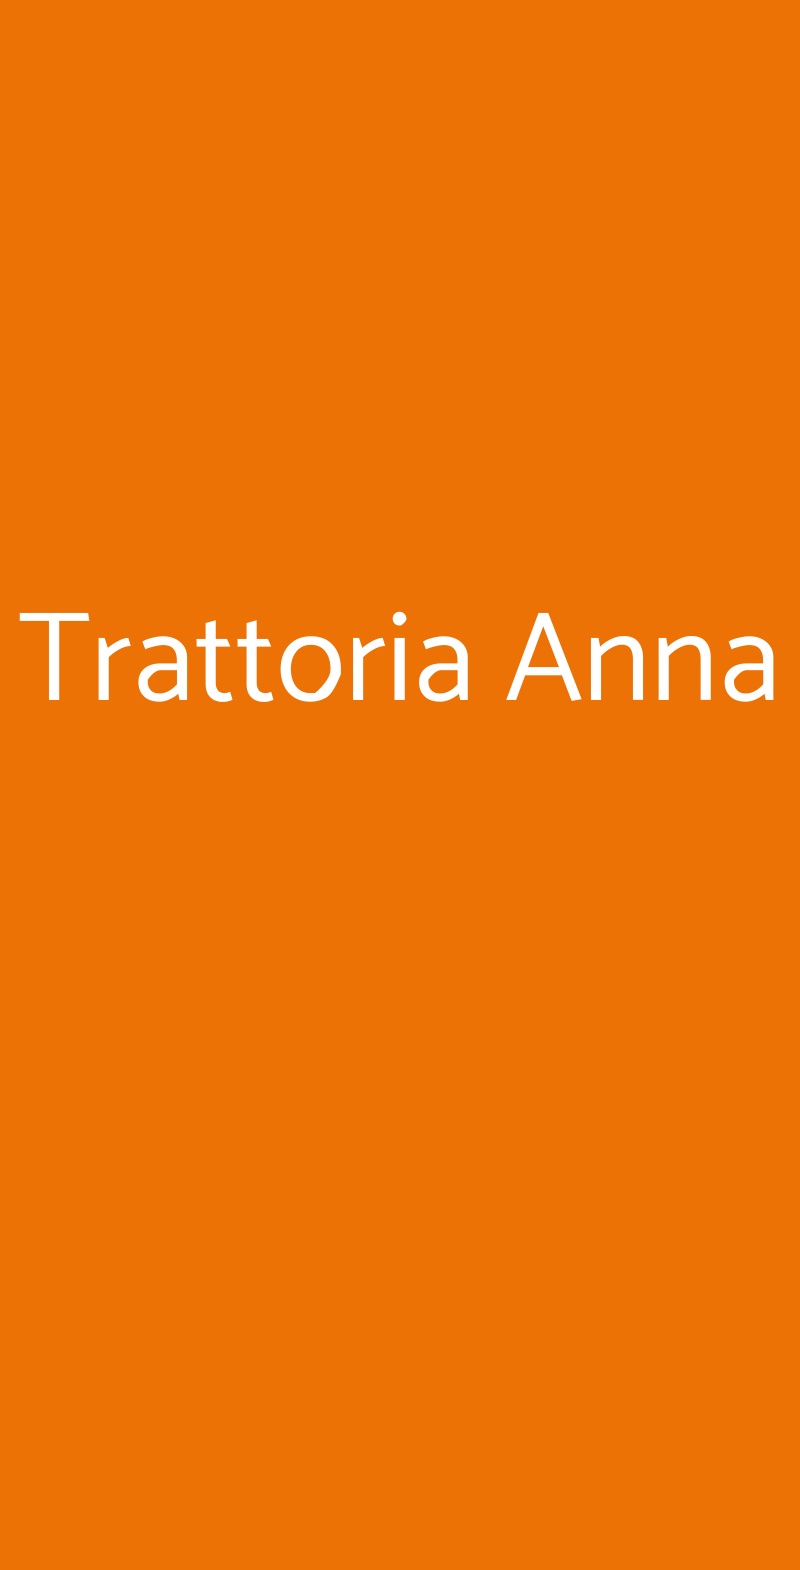 Trattoria Anna Castel Maggiore menù 1 pagina